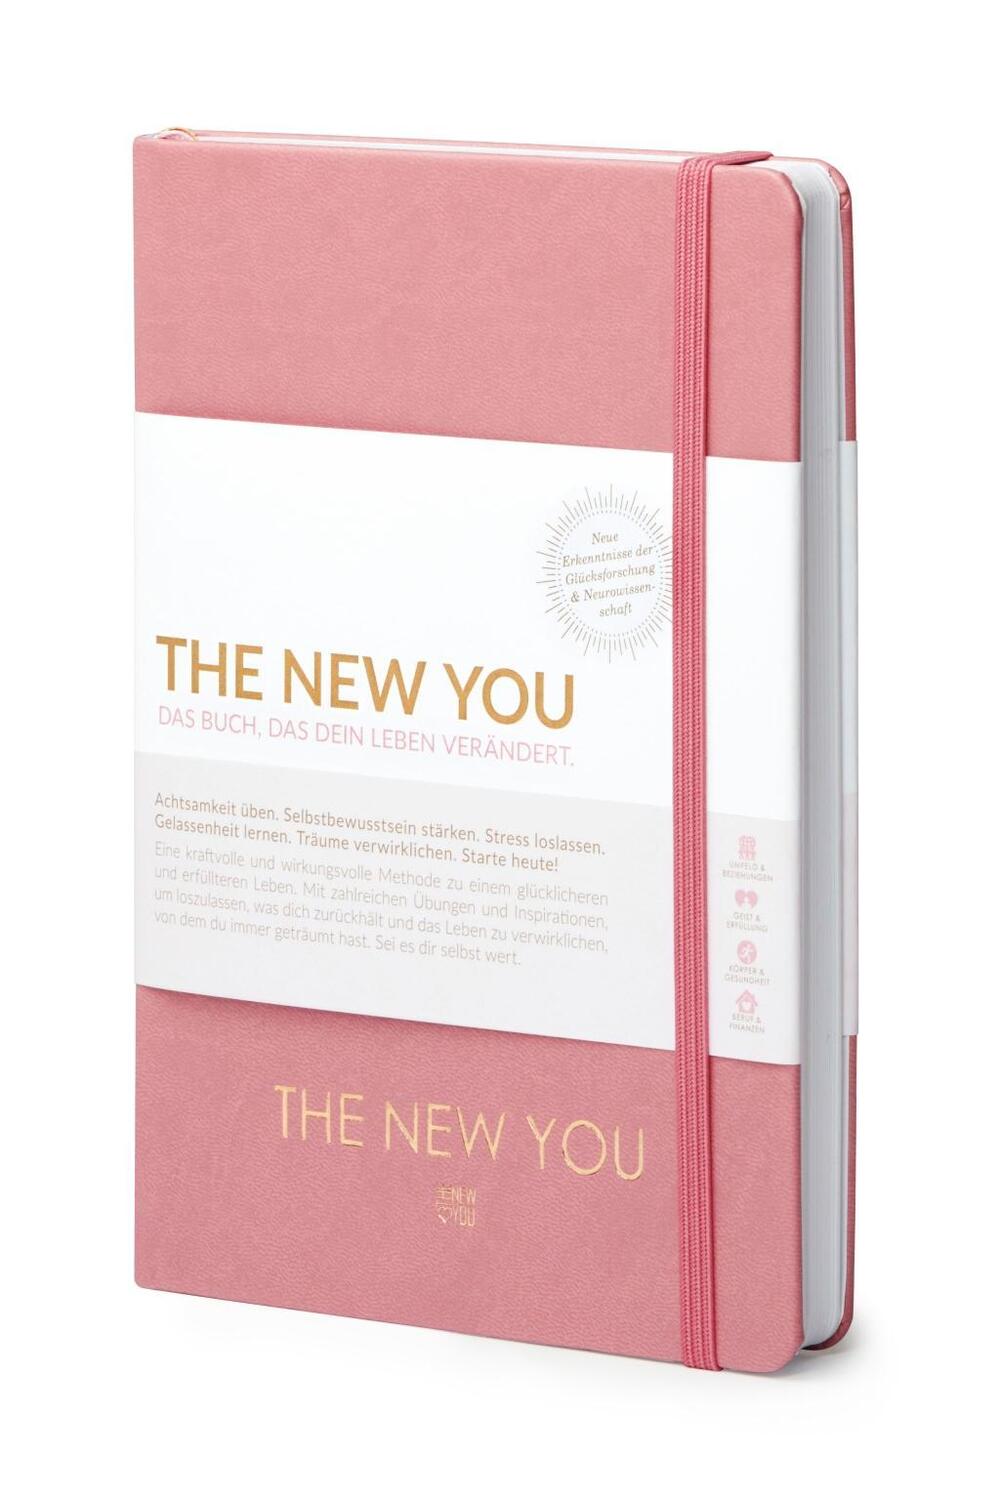 Bild: 9783981891423 | THE NEW YOU (rosa) - Das Buch, das dein Leben verändert. | Iris Reiche